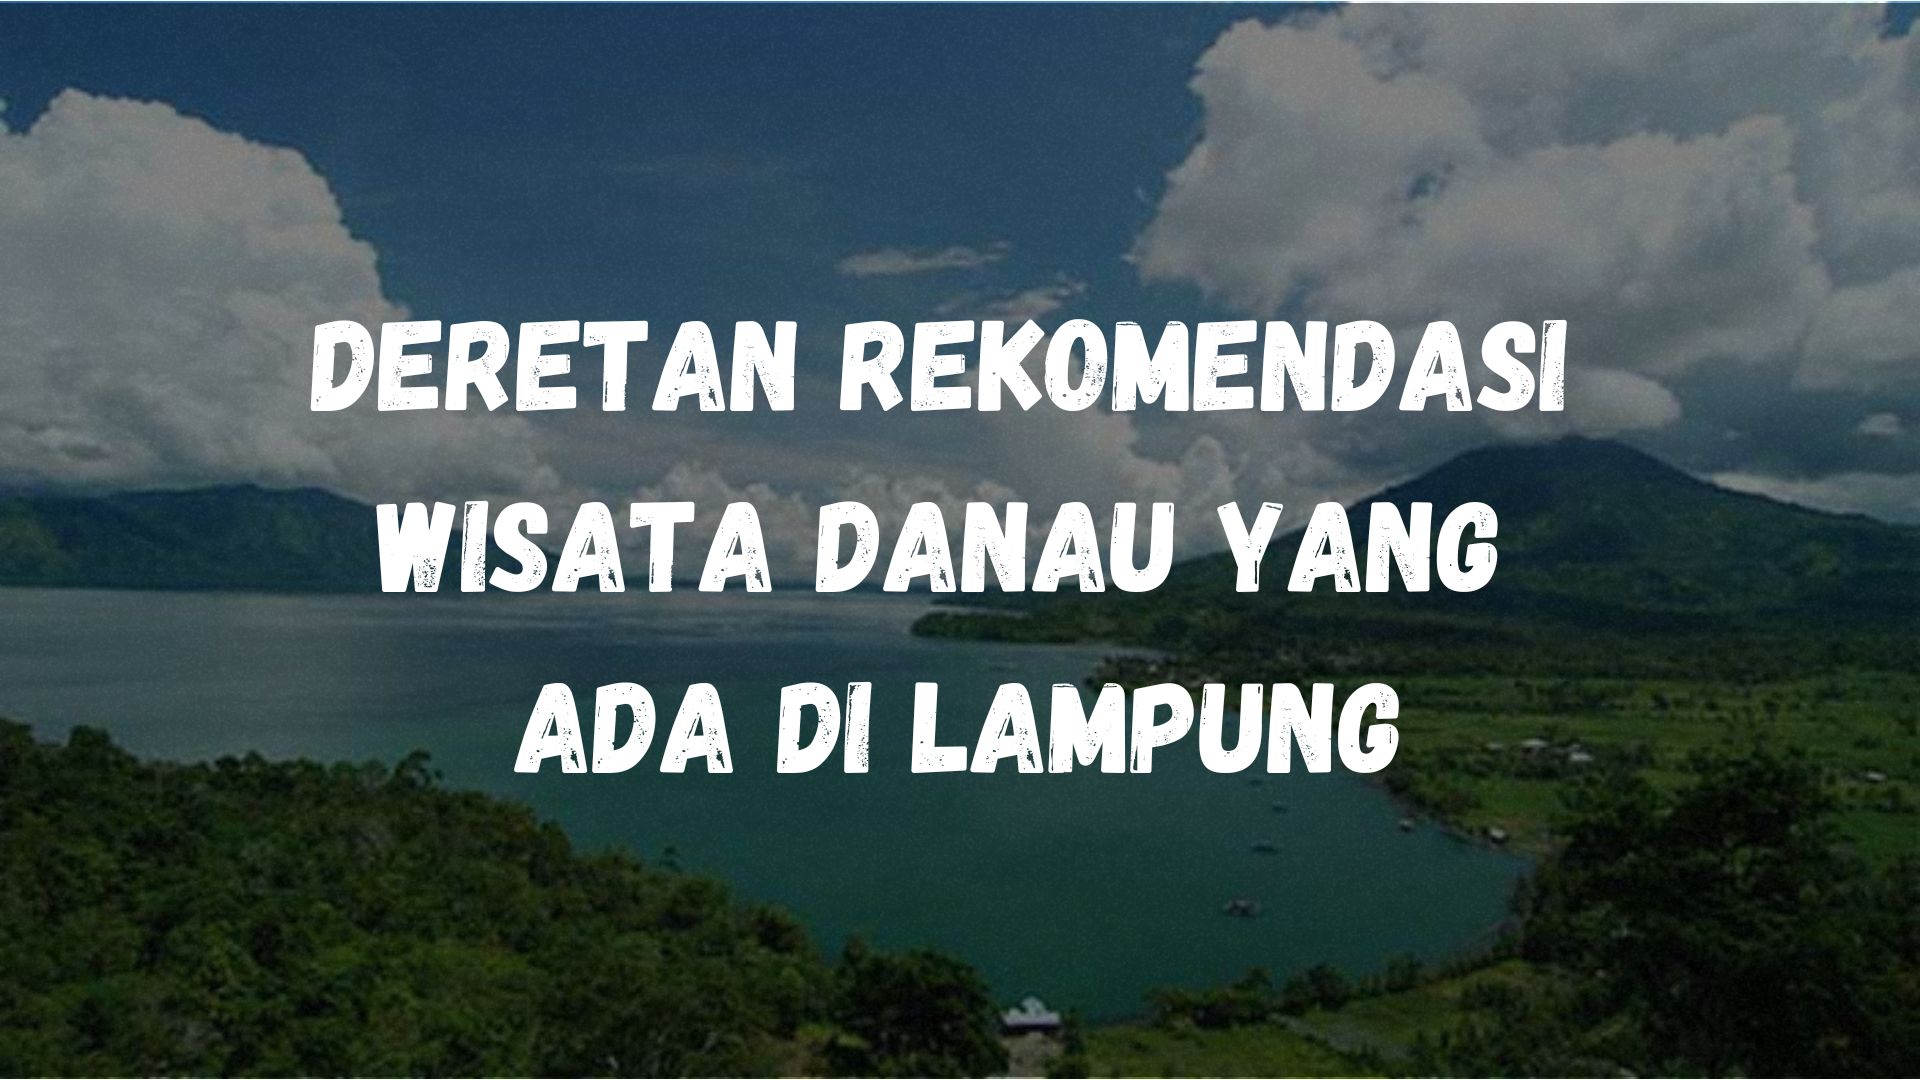 Deretan rekomendasi wisata danau yang ada di Lampung